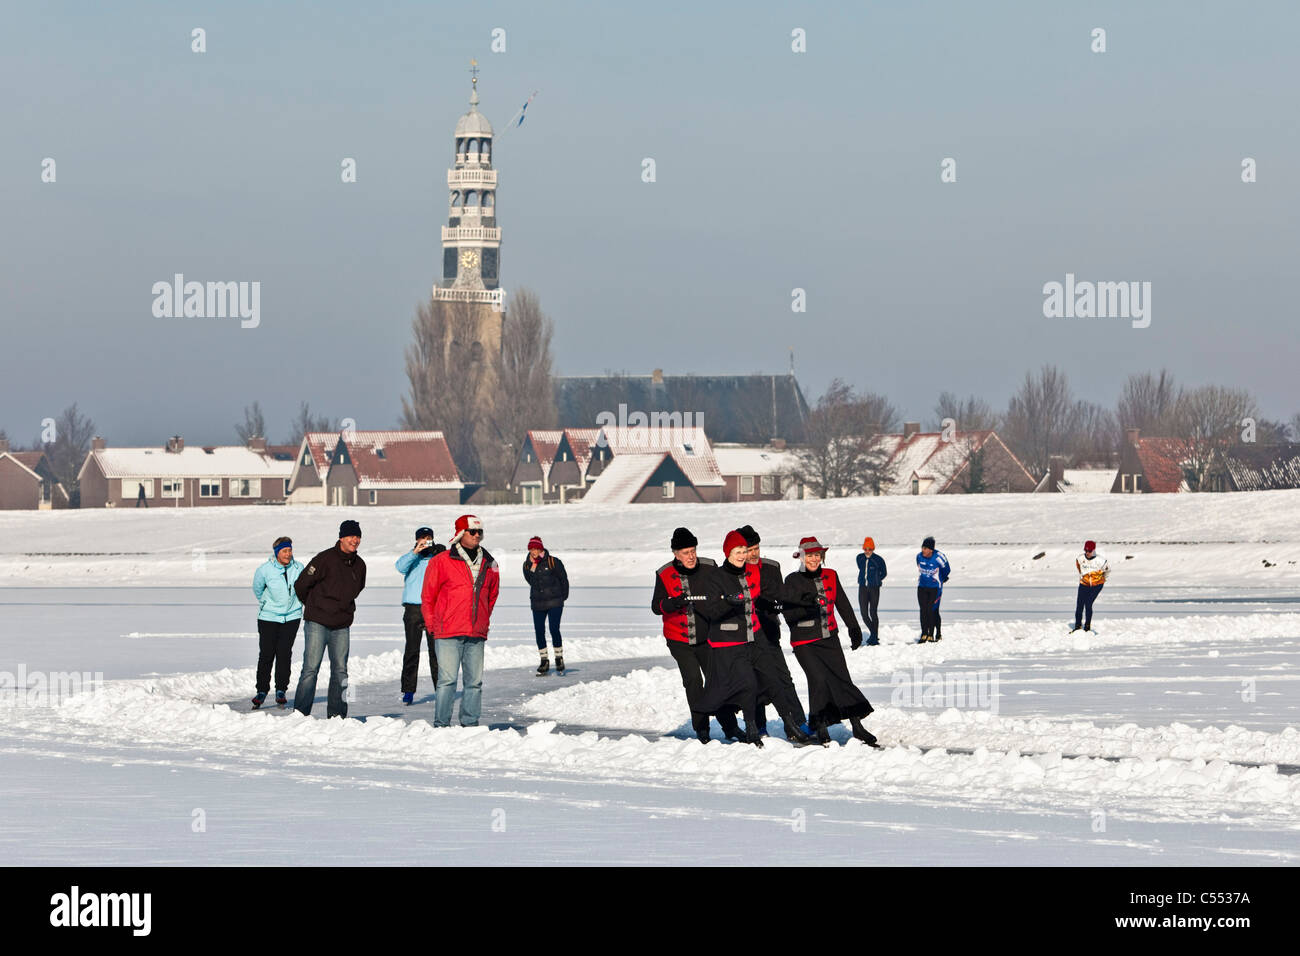 Niederlande, Hindeloopen, niederländische Hauptstadt des Eislaufs Kultur. Eislaufen und Eiskunstlaufen gleiten) auf See namens Ijsselmeer Stockfoto